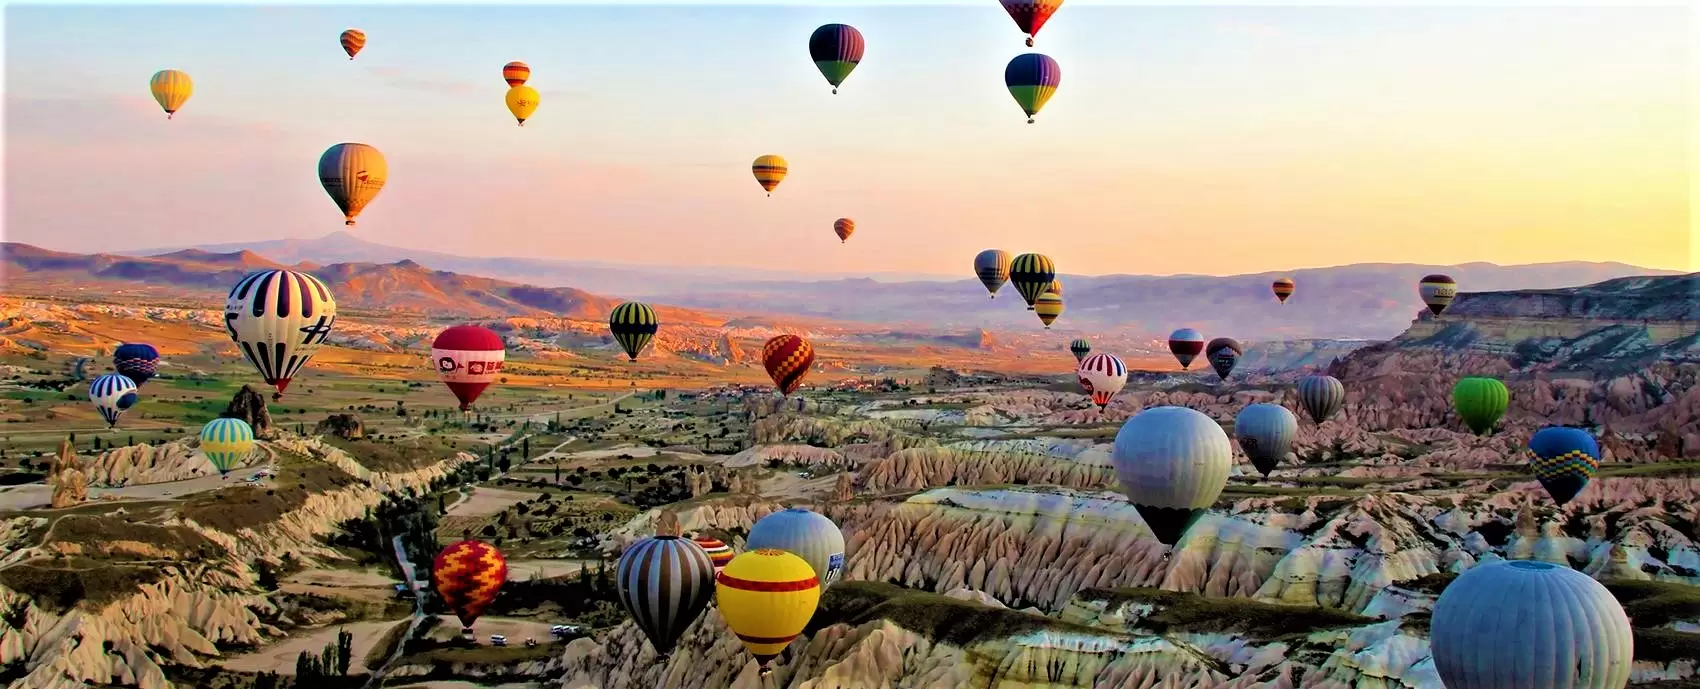 Revelion Turcia – Cappadocia